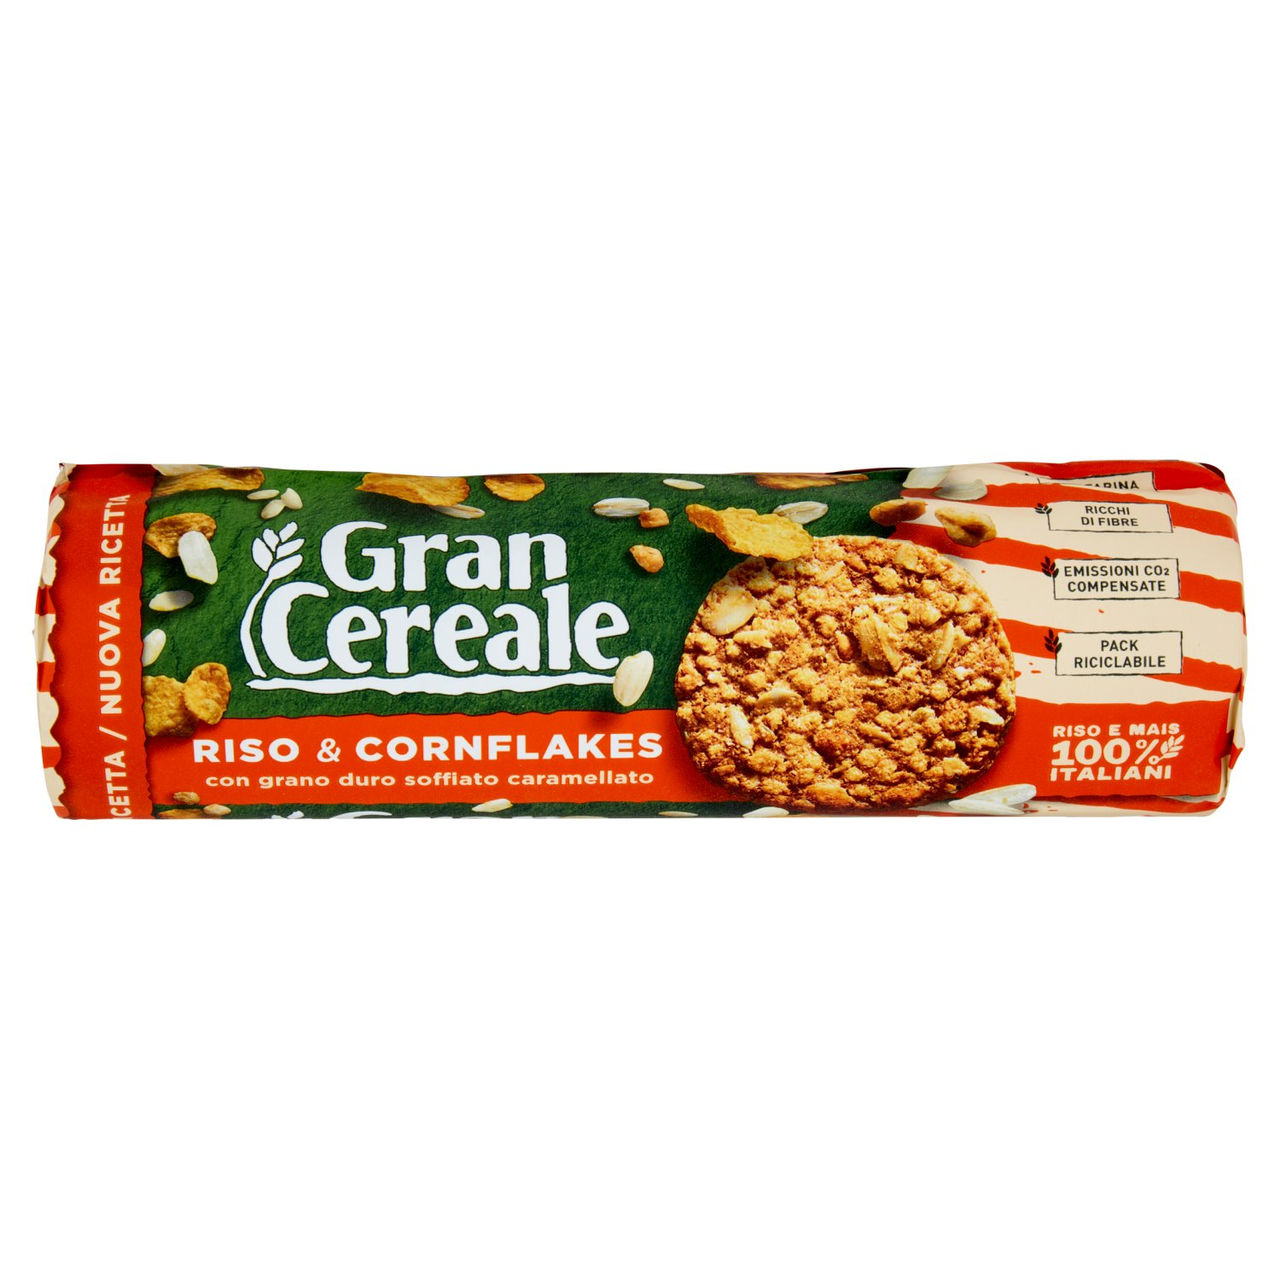 Gran Cereale Croccante con Riso in vendita online